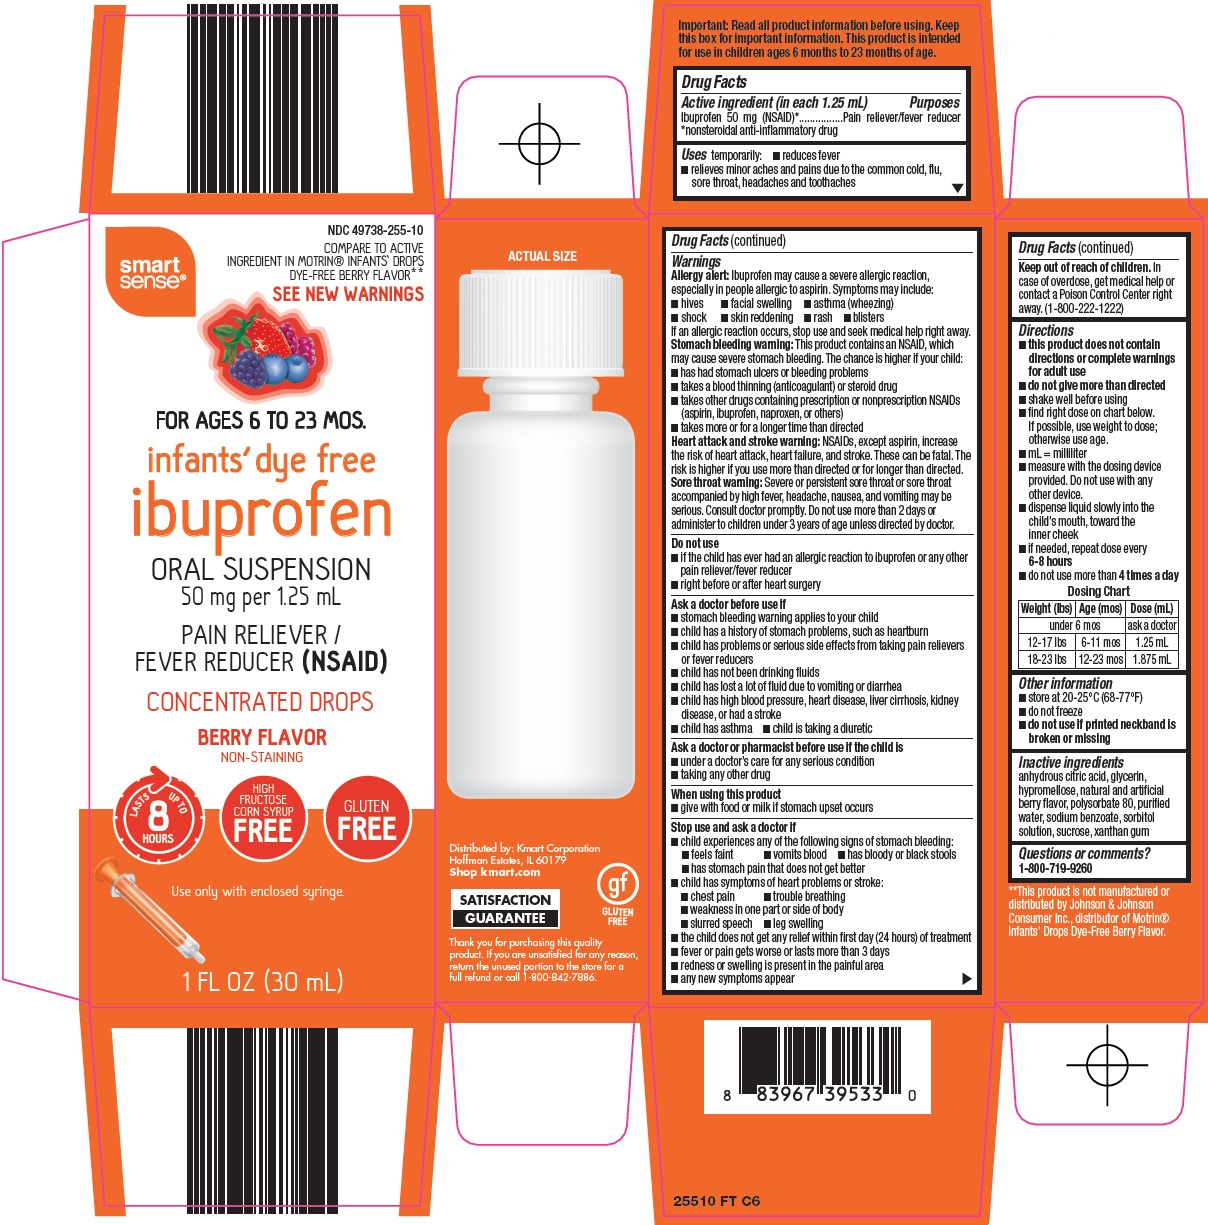 Ibuprofen Oral Suspension Carton Image 1